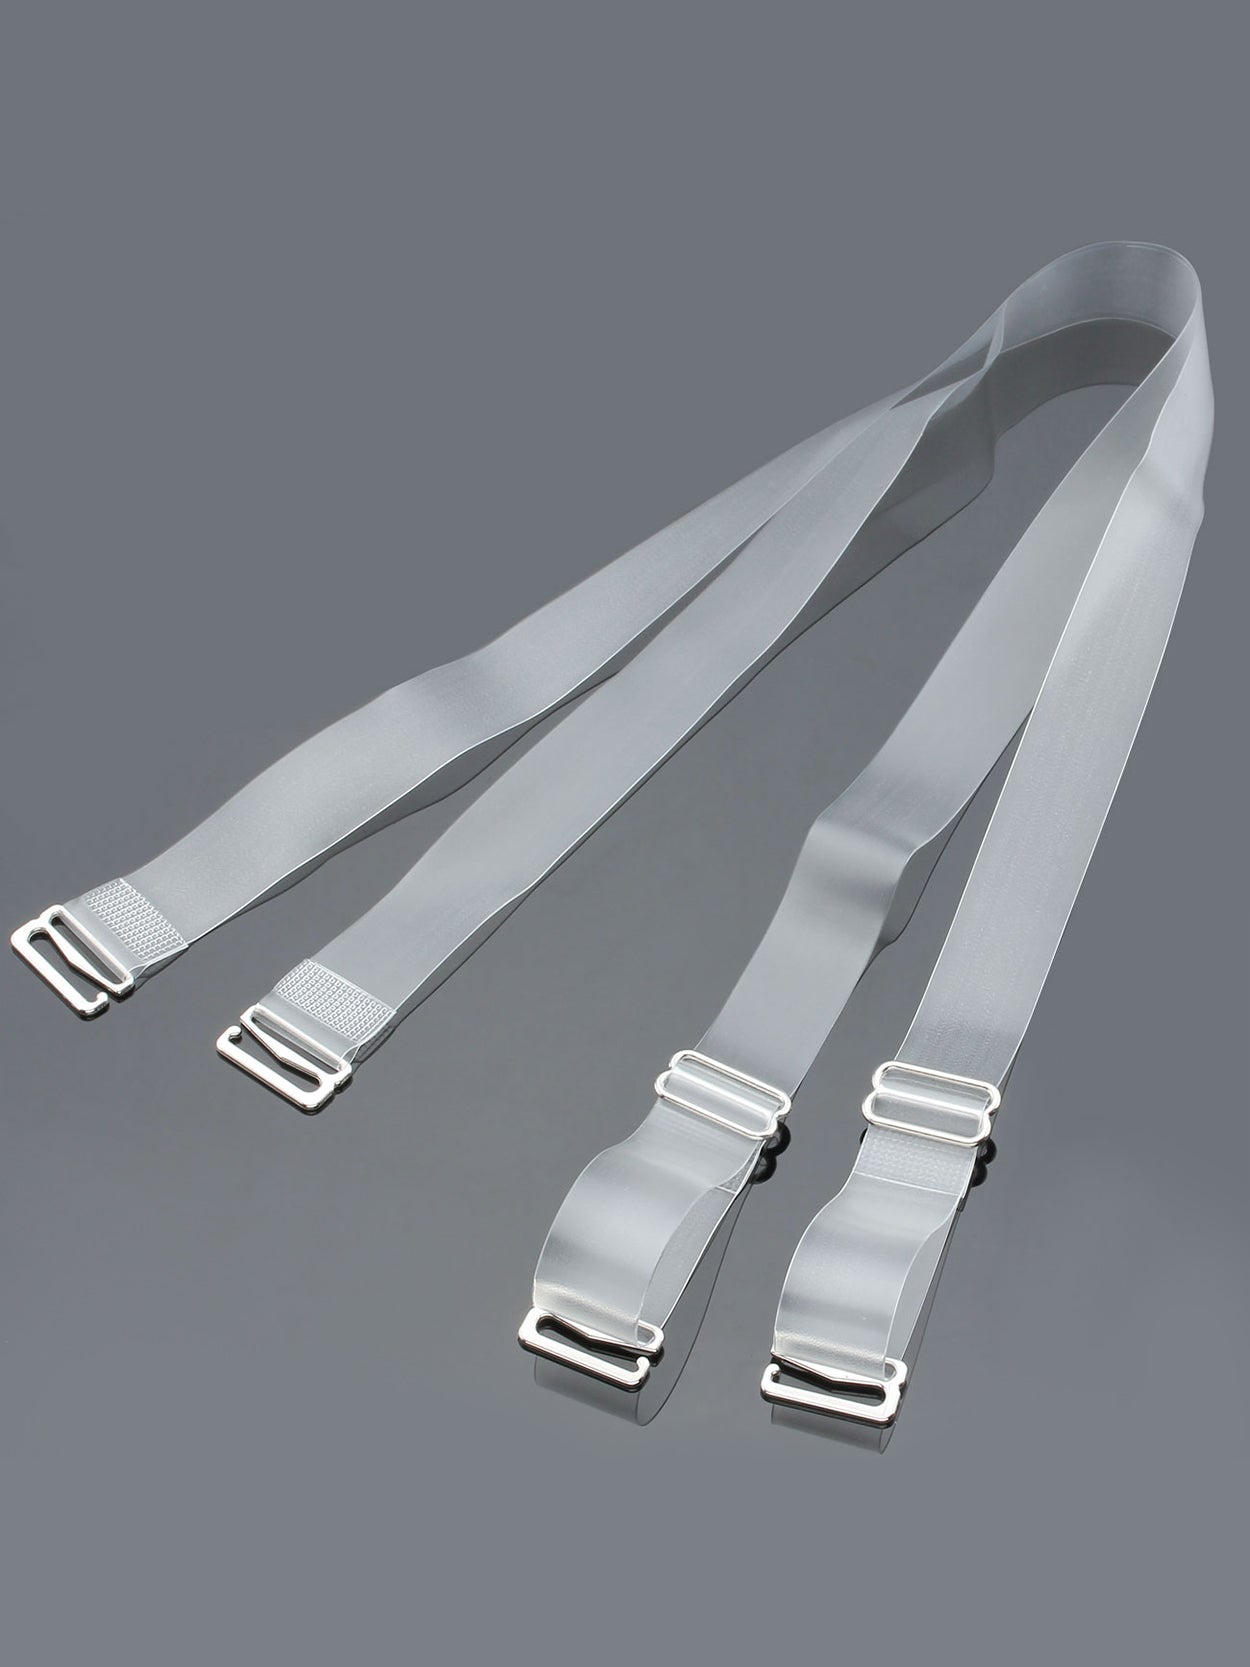 3 Pairs Adjustable Transparent Bra Straps, Soft Elastic Anti-slip